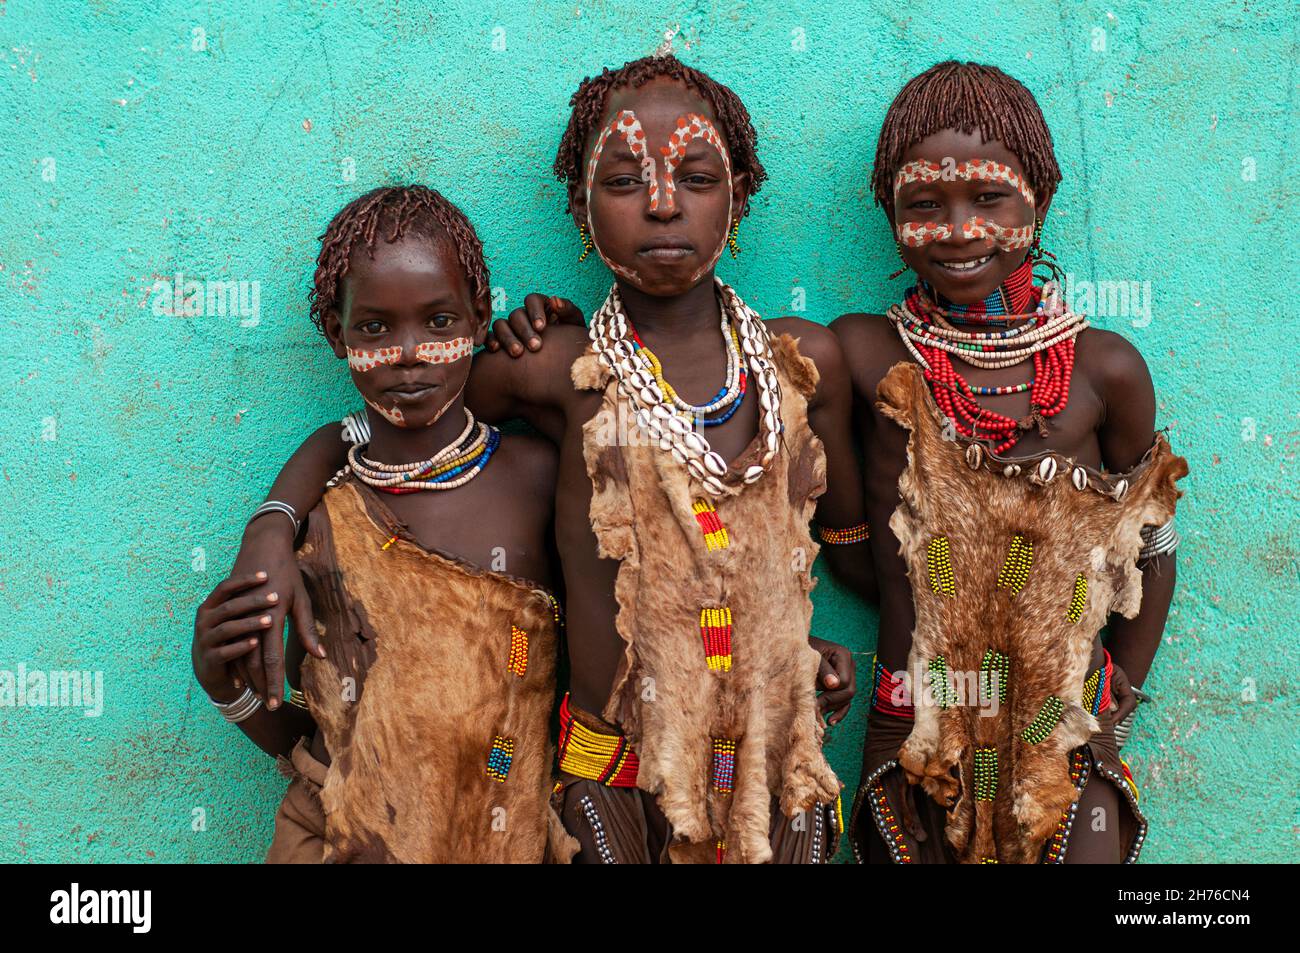 Trois jeunes filles de la tribu Hamar avec des visages peints, des perles et des peaux d'animaux typiques de leur tribu Banque D'Images